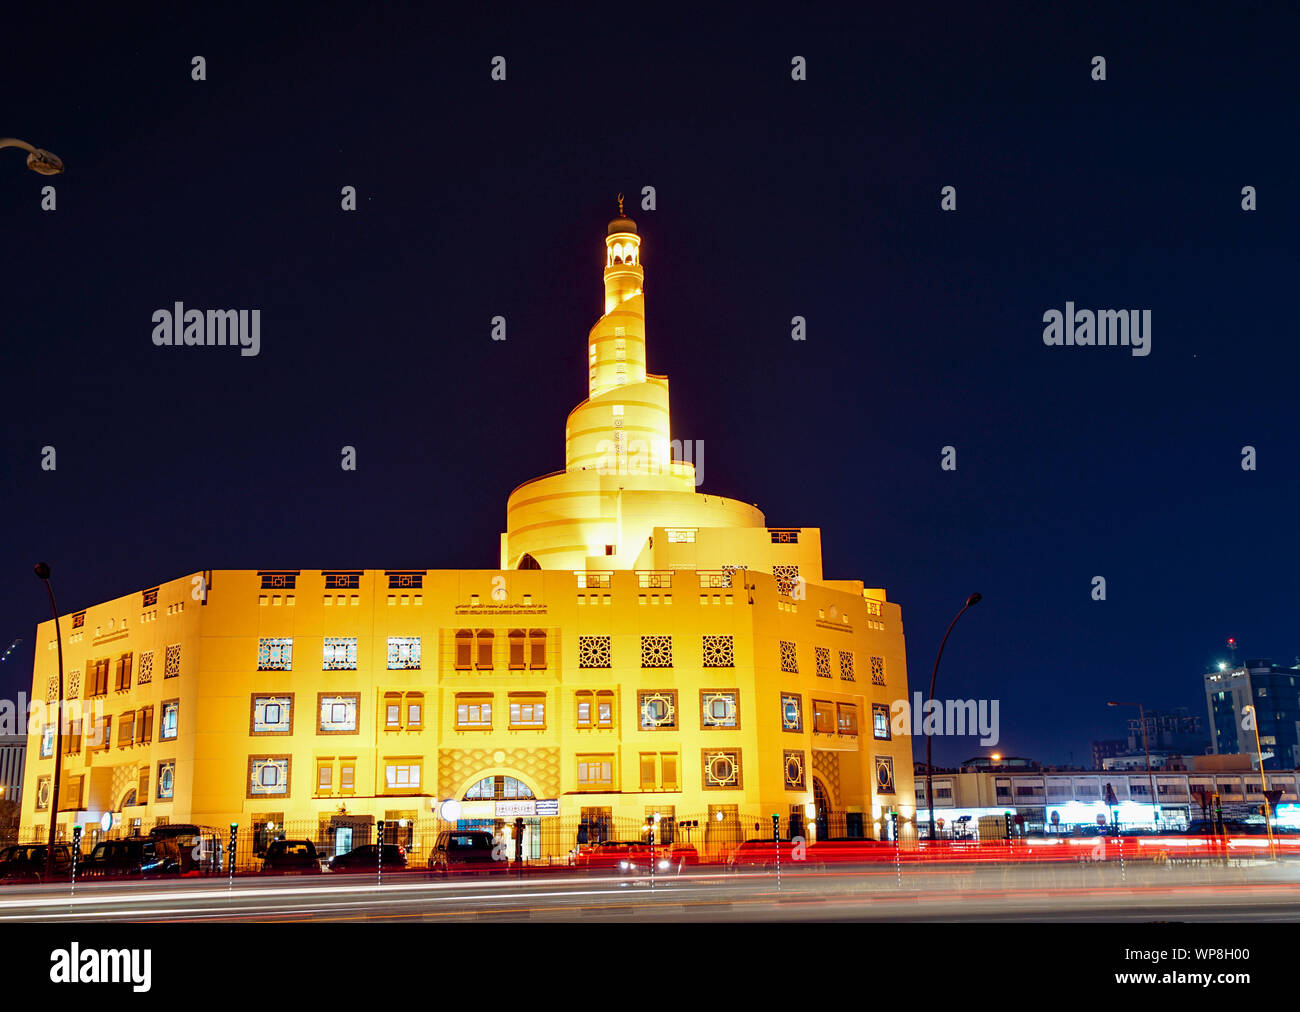 Al Fanar moschea, incandescente golden con la sua torre a spirale o minareto contro il cielo notturno. Doha in Qatar. Foto Stock